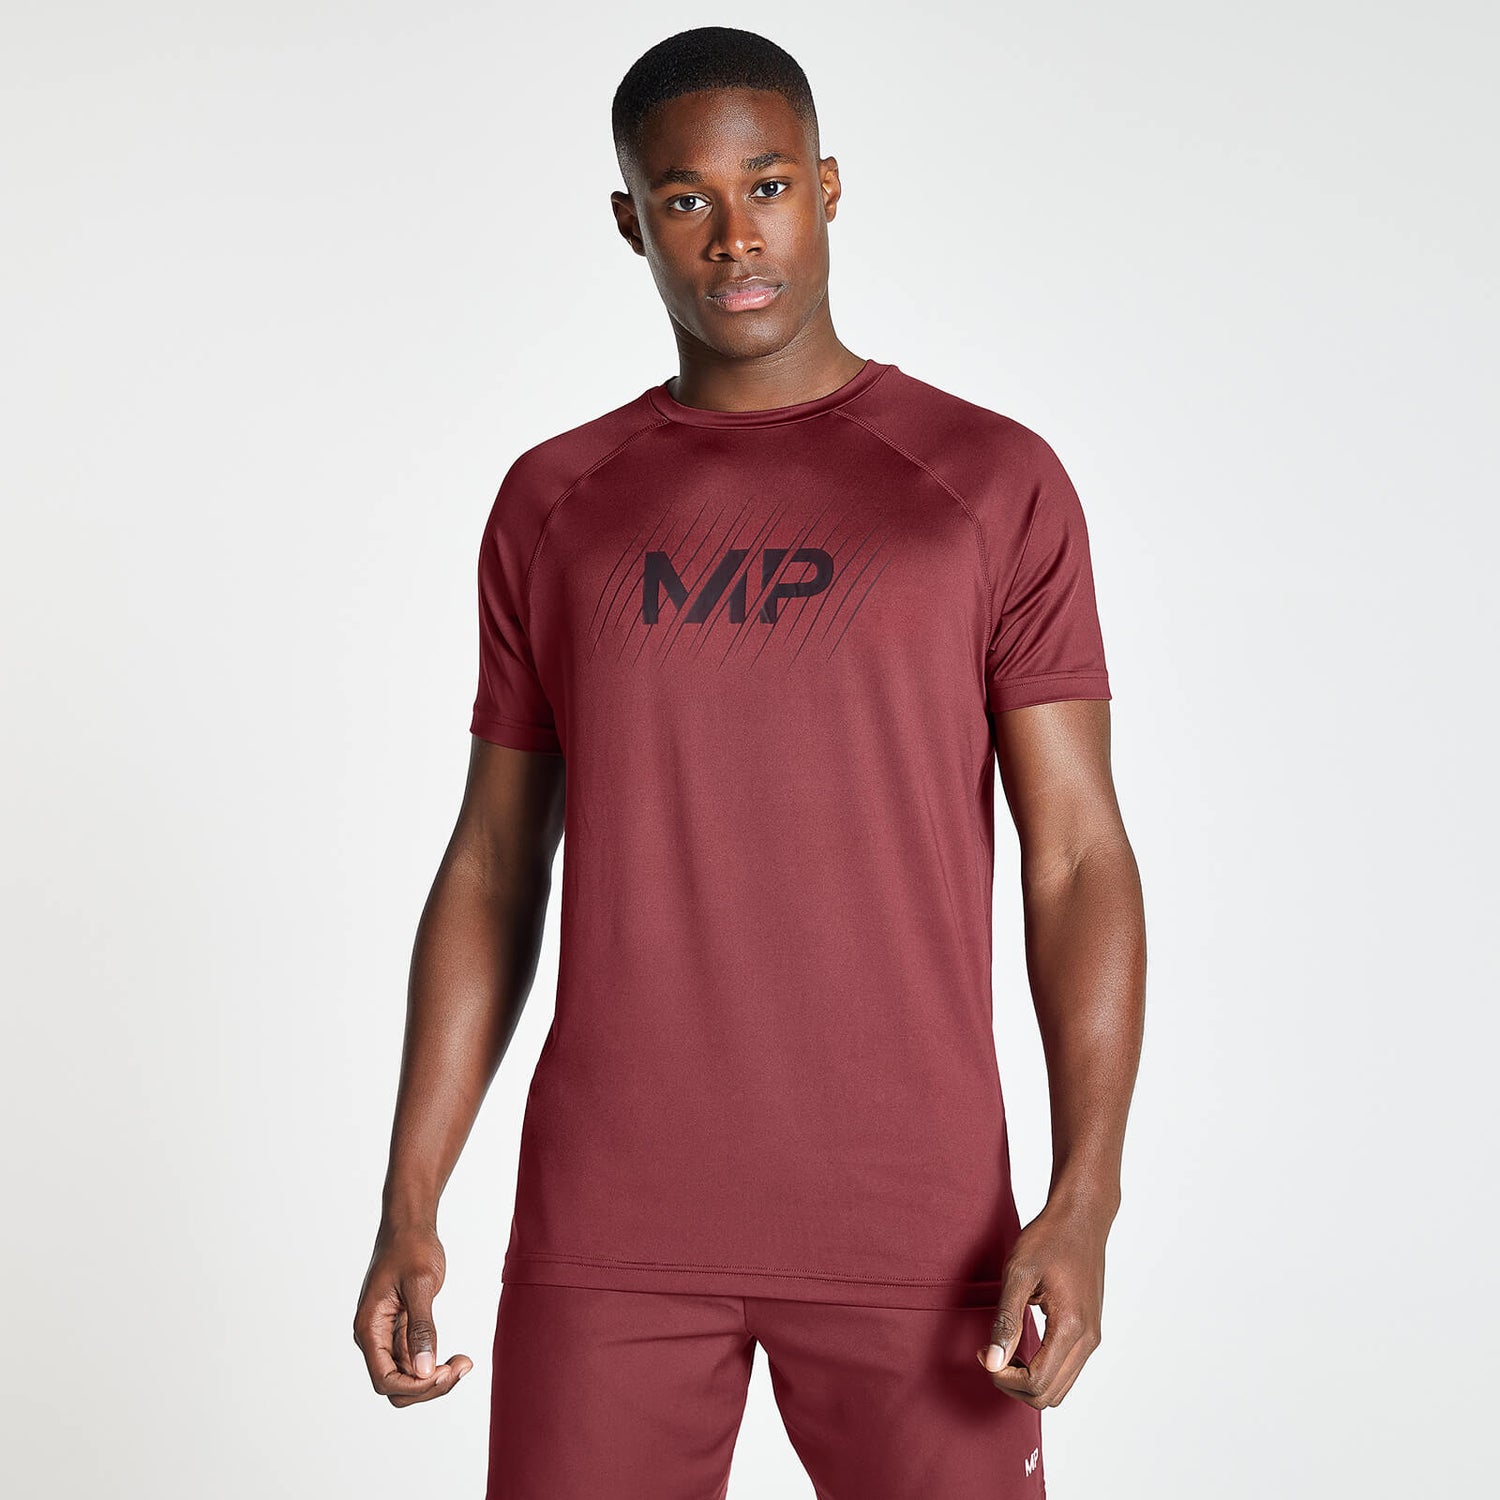 MP メンズ シングルズ デー エッセンシャル トレーニング ショートスリーブ Tシャツ - レッド ビーン - XXS